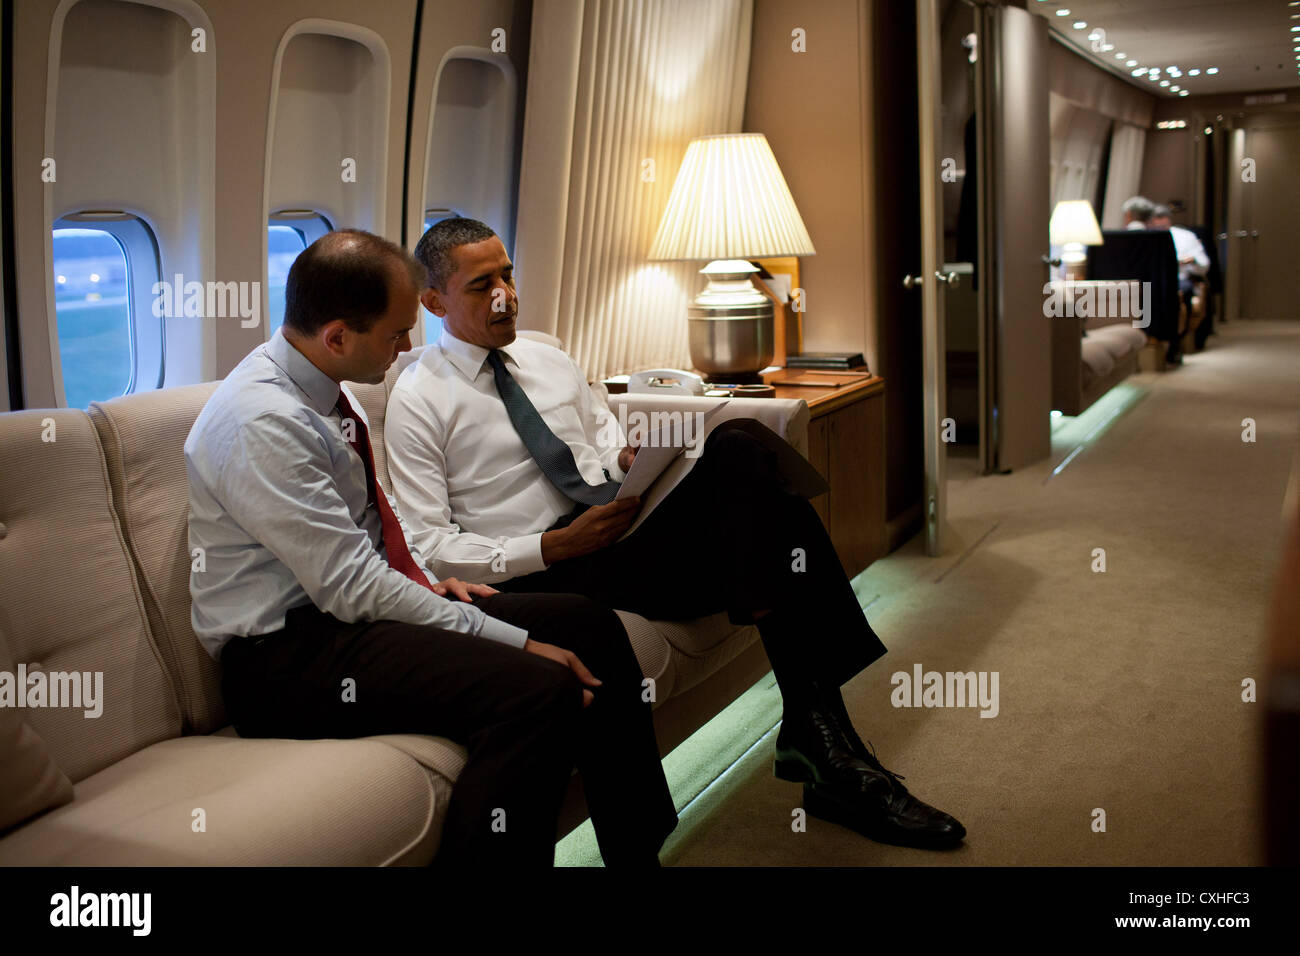 US-Präsident Barack Obama spricht mit Ben Rhodes, stellvertretender nationaler Sicherheitsberater für strategische Kommunikation 11. September 2011 an Bord der Air Force One auf dem Weg nach New York um den zehnten Jahrestag der 9/11 Anschläge gegen die Vereinigten Staaten zu gedenken. Stockfoto